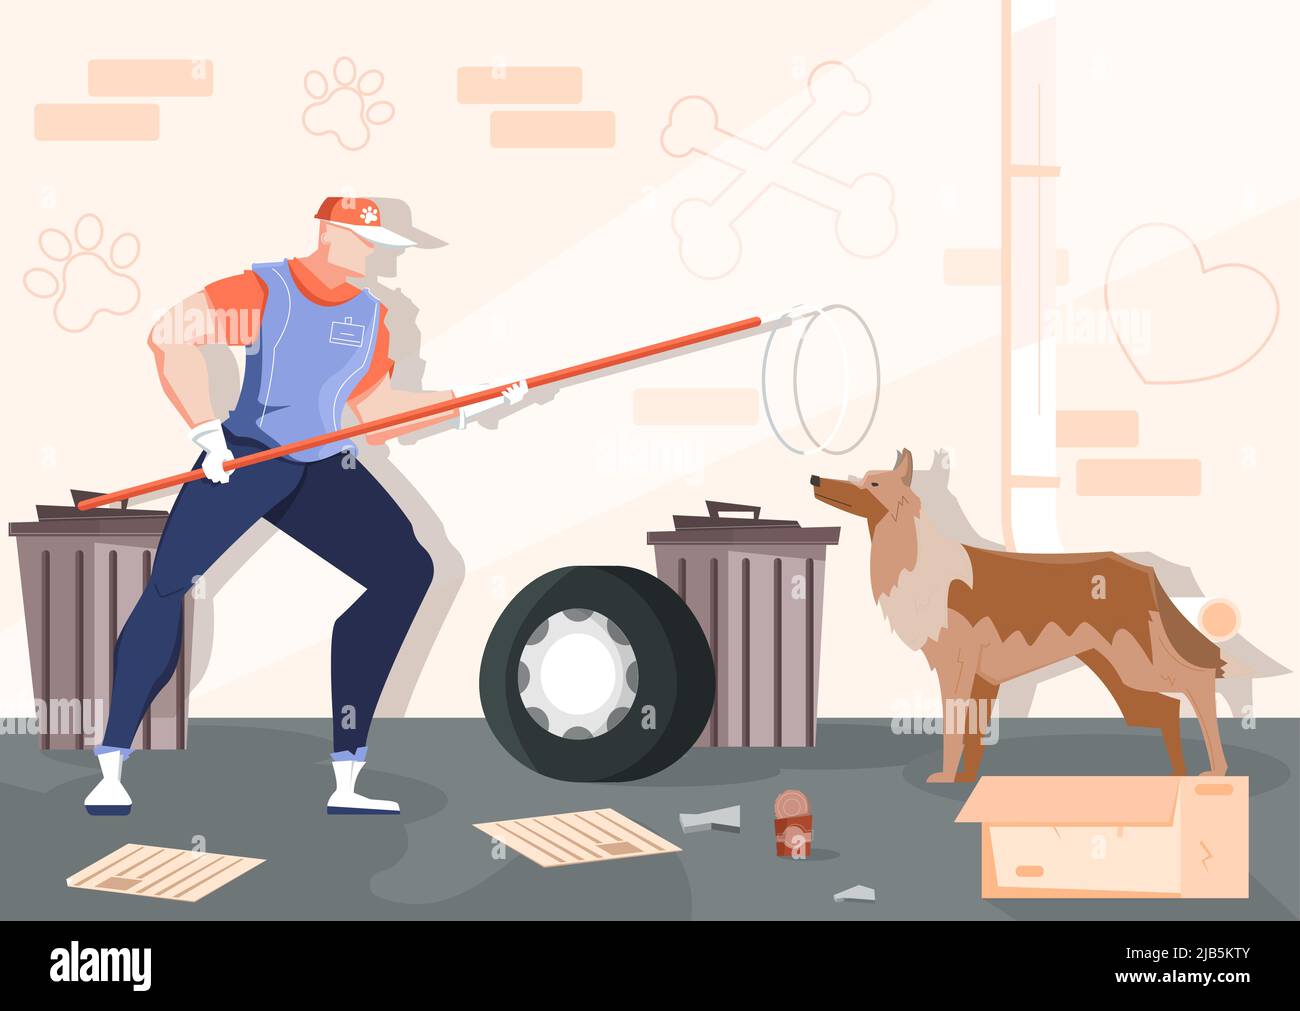 Captura de animales sin hogar composición plana con paisaje callejero pared de ladrillo basura y humano con perro salvaje vector ilustración Ilustración del Vector